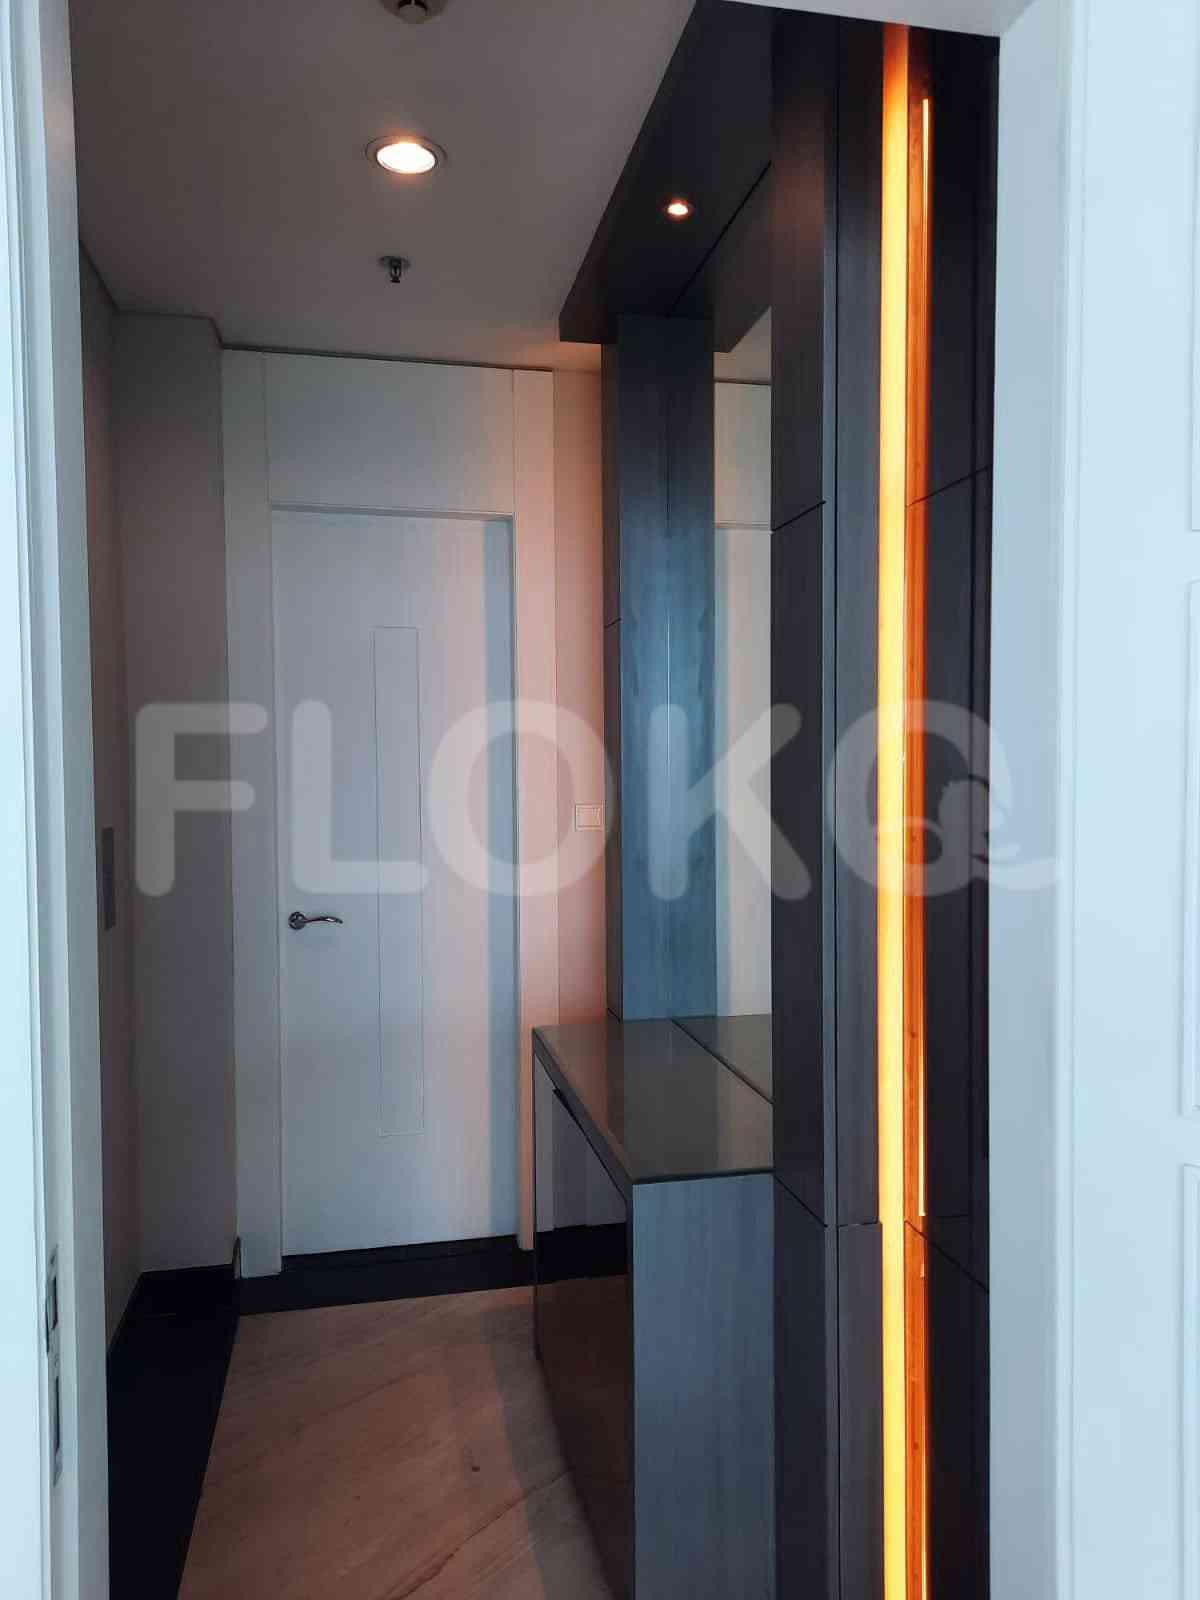 4 Bedroom on 15th Floor for Rent in Regatta - fpl609 8